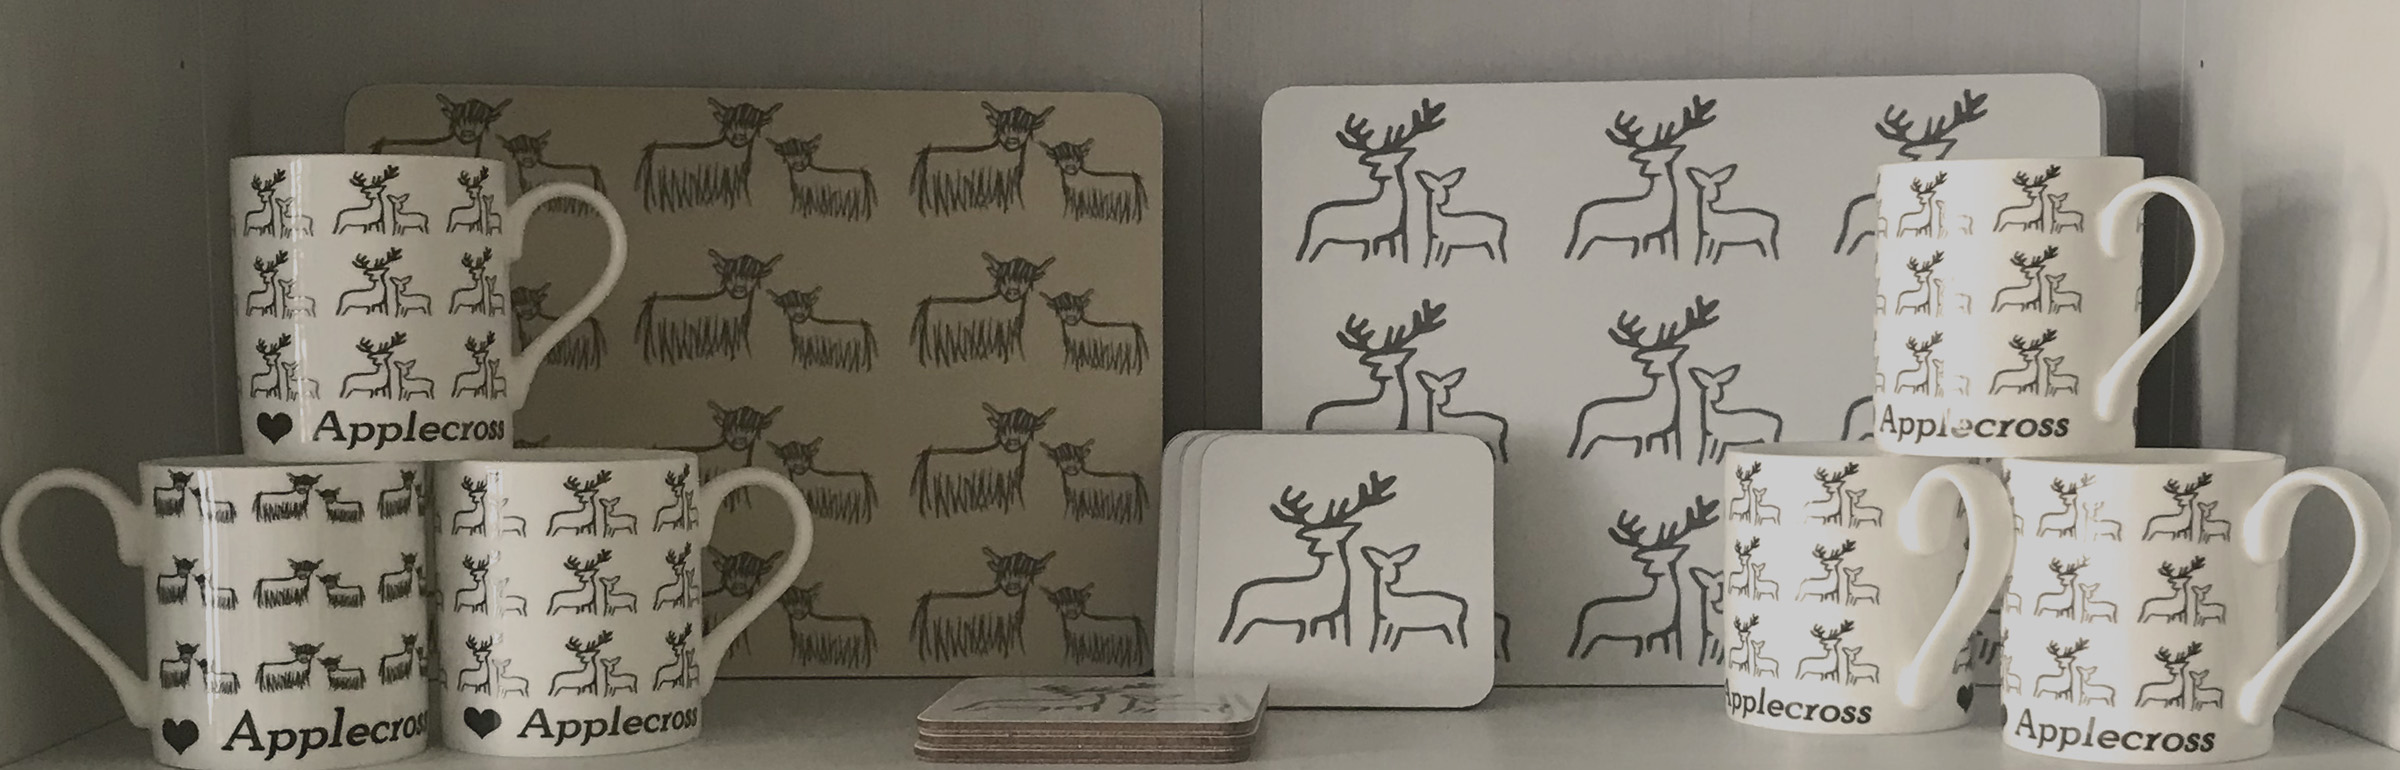 Clement Design Shop Mugs Coasters Placemats